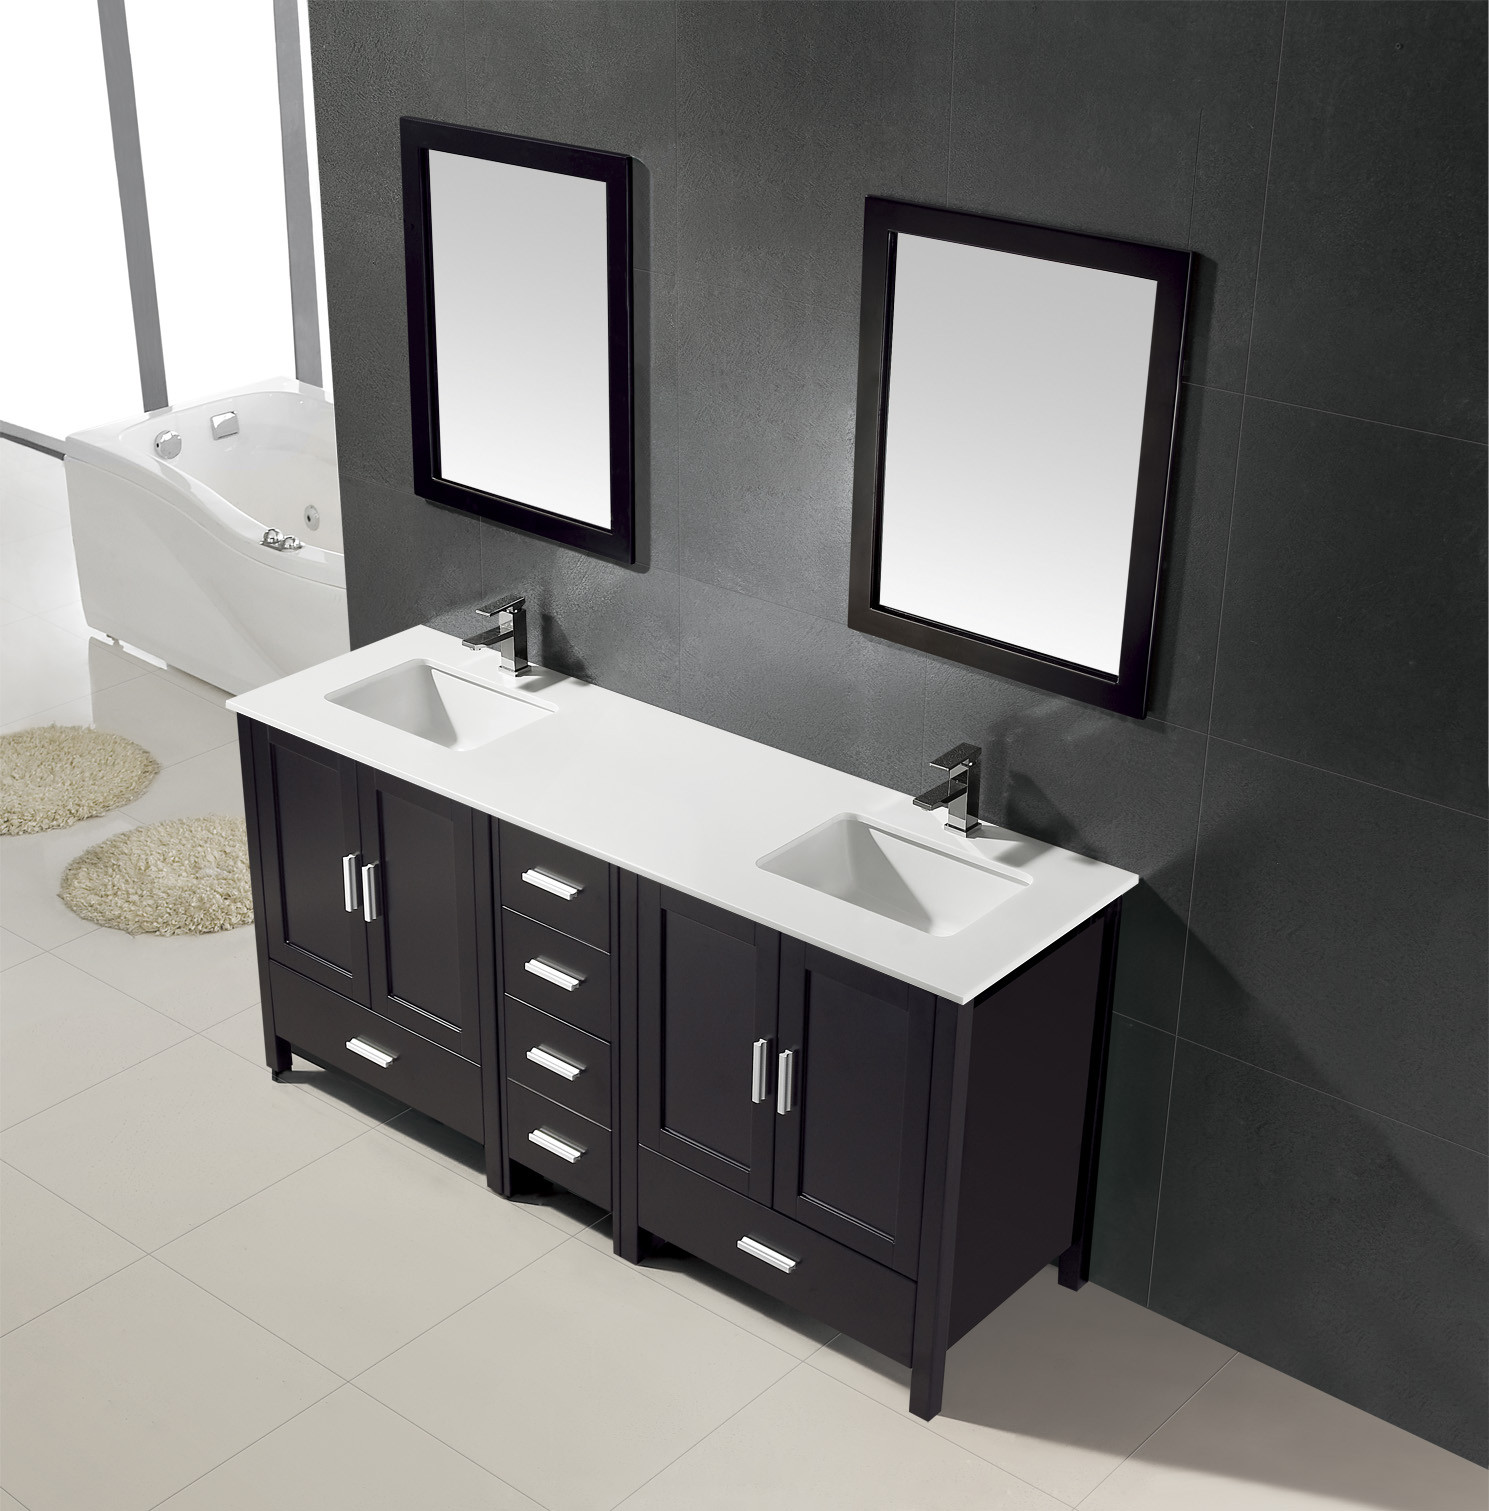 New Bathroom Vanity
 Hottest Trends in Bathroom Vanities